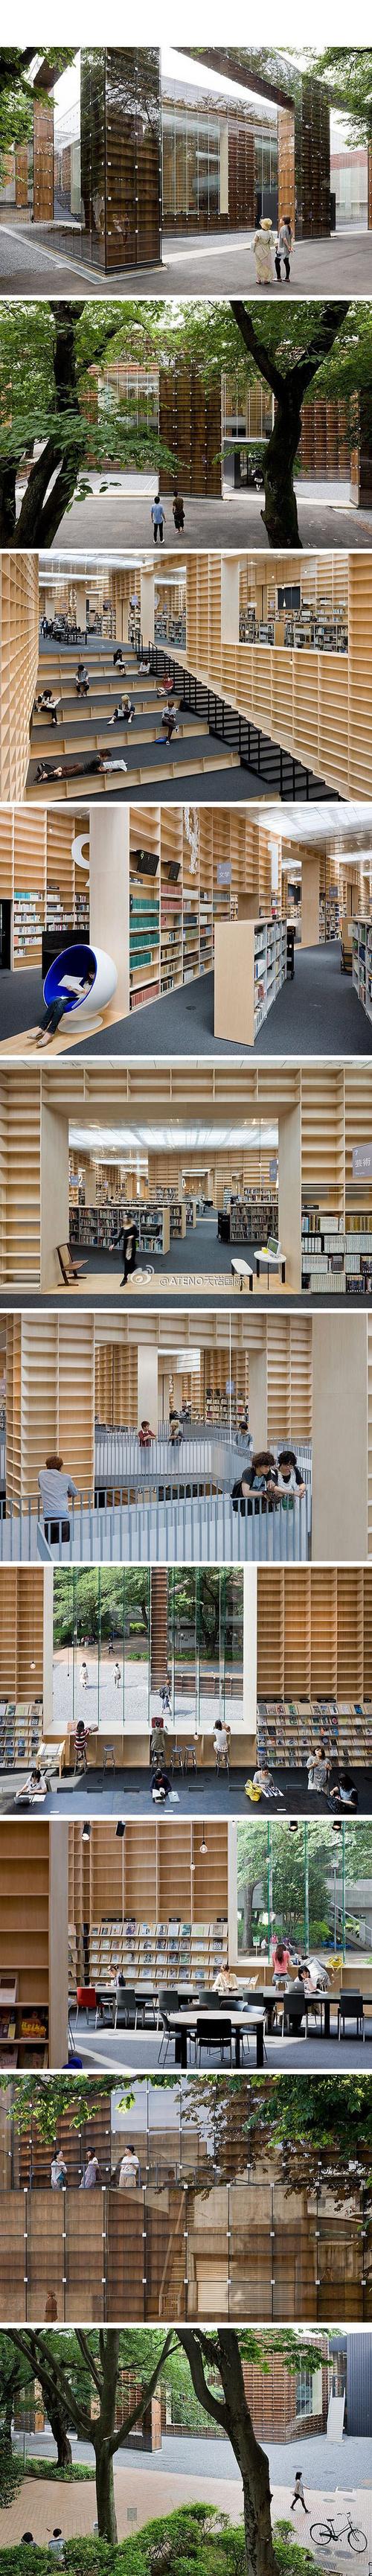 【藤本壮介:武藏野美术大学图书馆】图书馆是一座6500平米的两层建筑